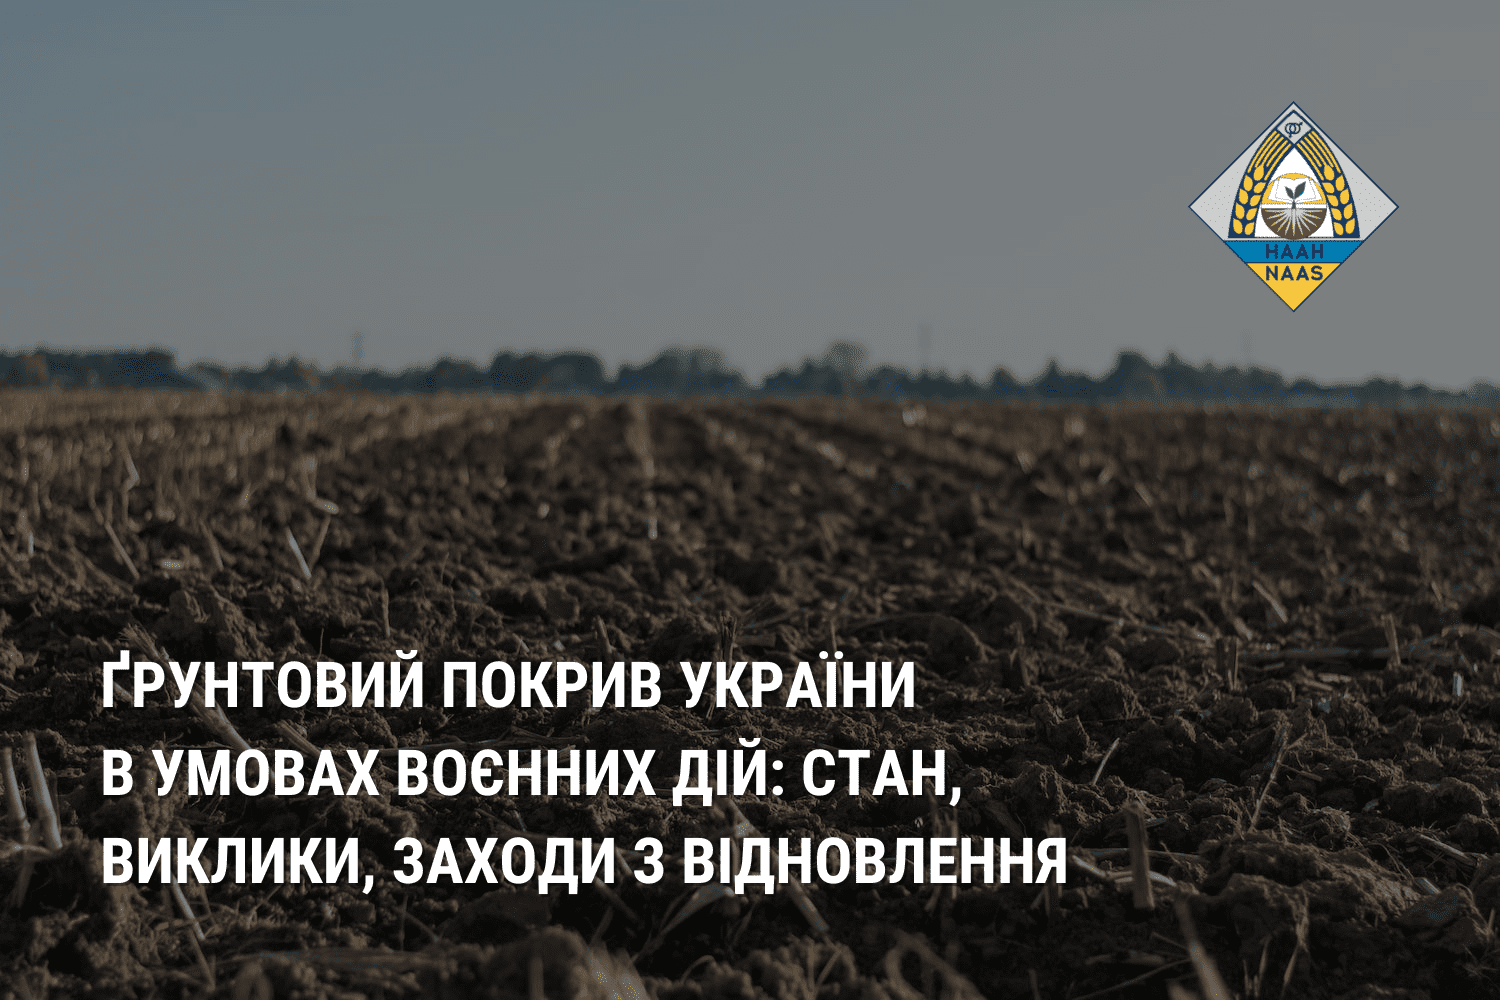 Ґрунтовий покрив України в умовах воєнних дій: стан, виклики, заходи з відновлення